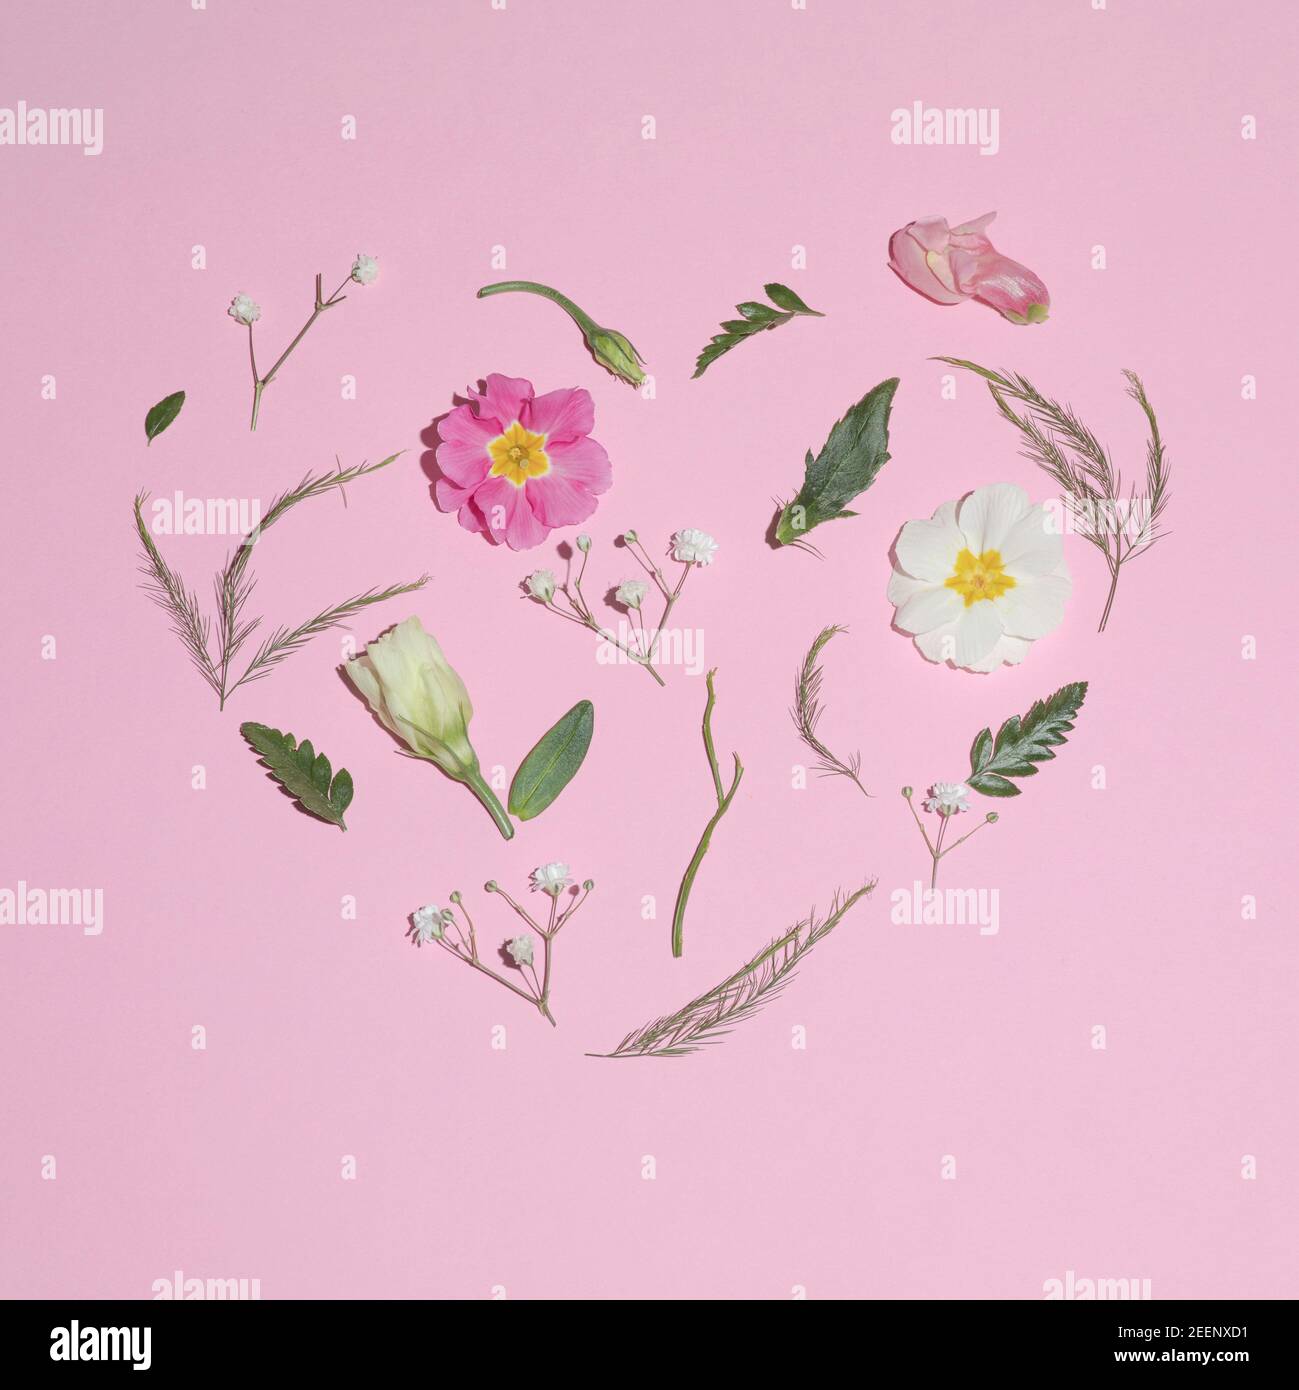 Der Frühling kommt in Herzform. Flat Lay-Konzept auf rosa Hintergrund Stockfoto